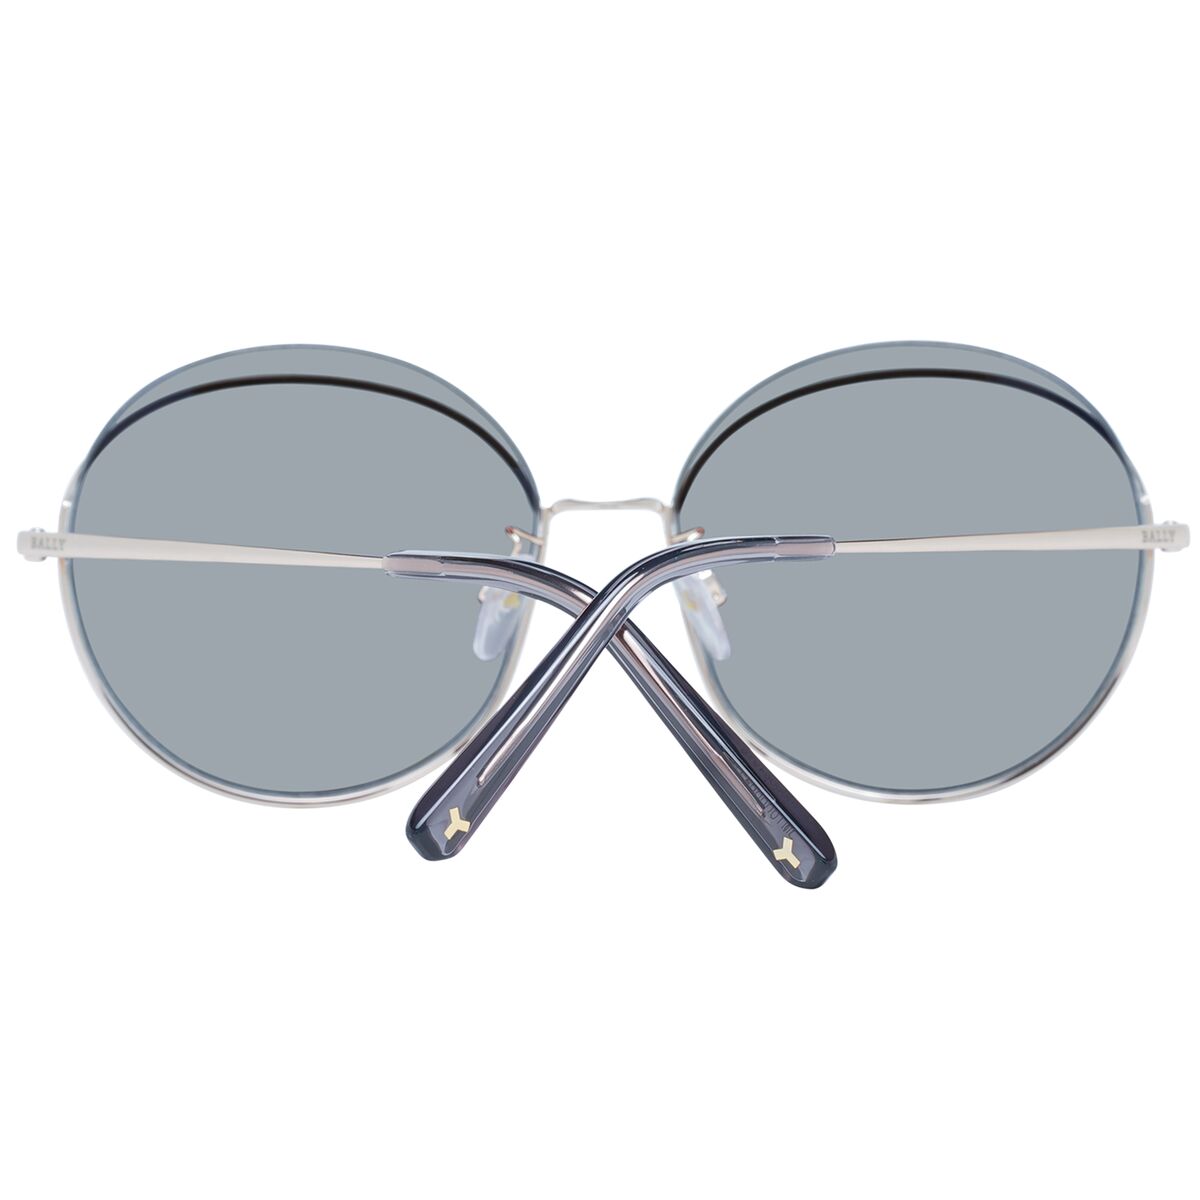 Kaufe Damensonnenbrille Bally BY0077-D 6028C bei AWK Flagship um € 114.00